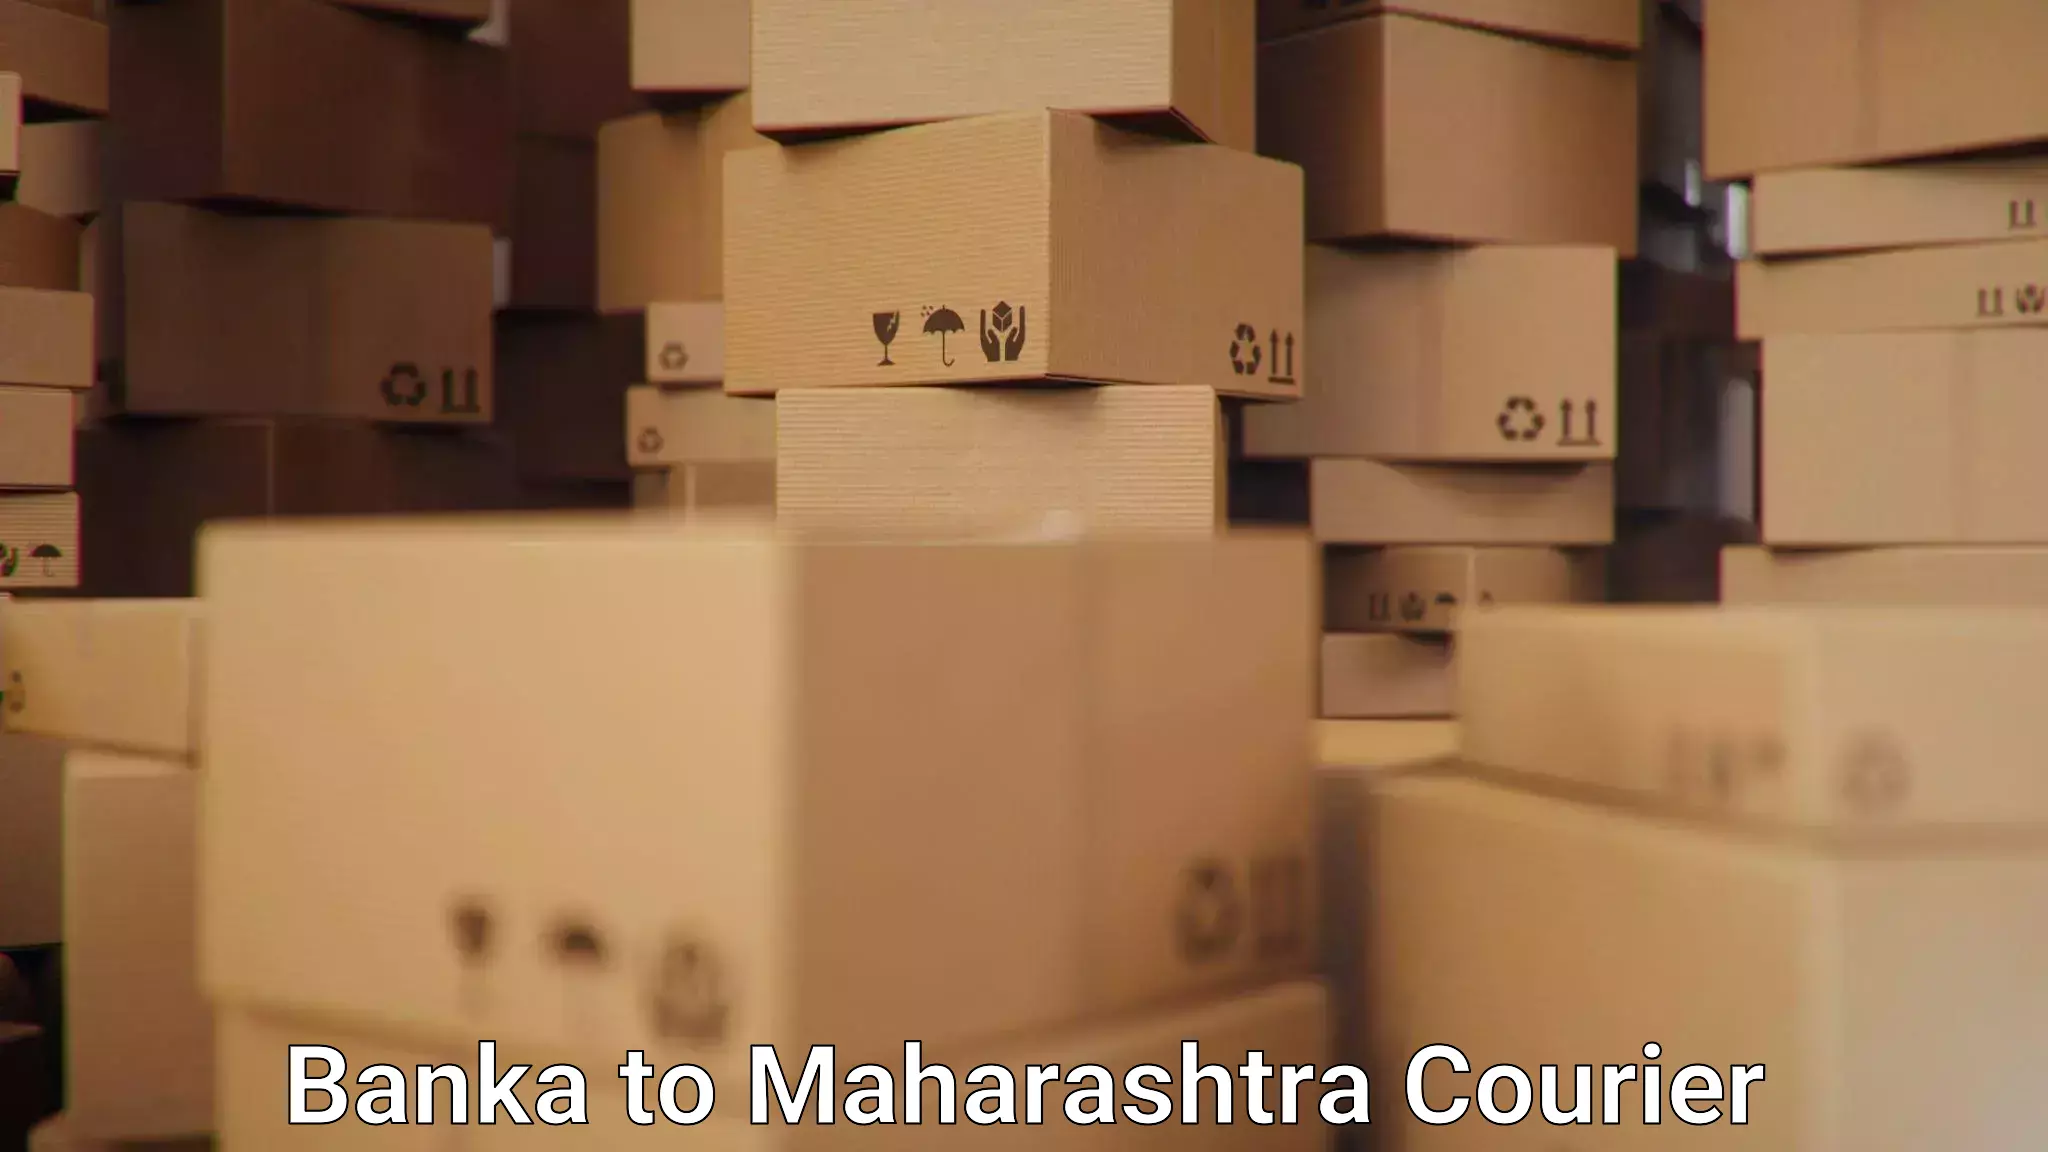 Courier service partnerships Banka to Maharashtra